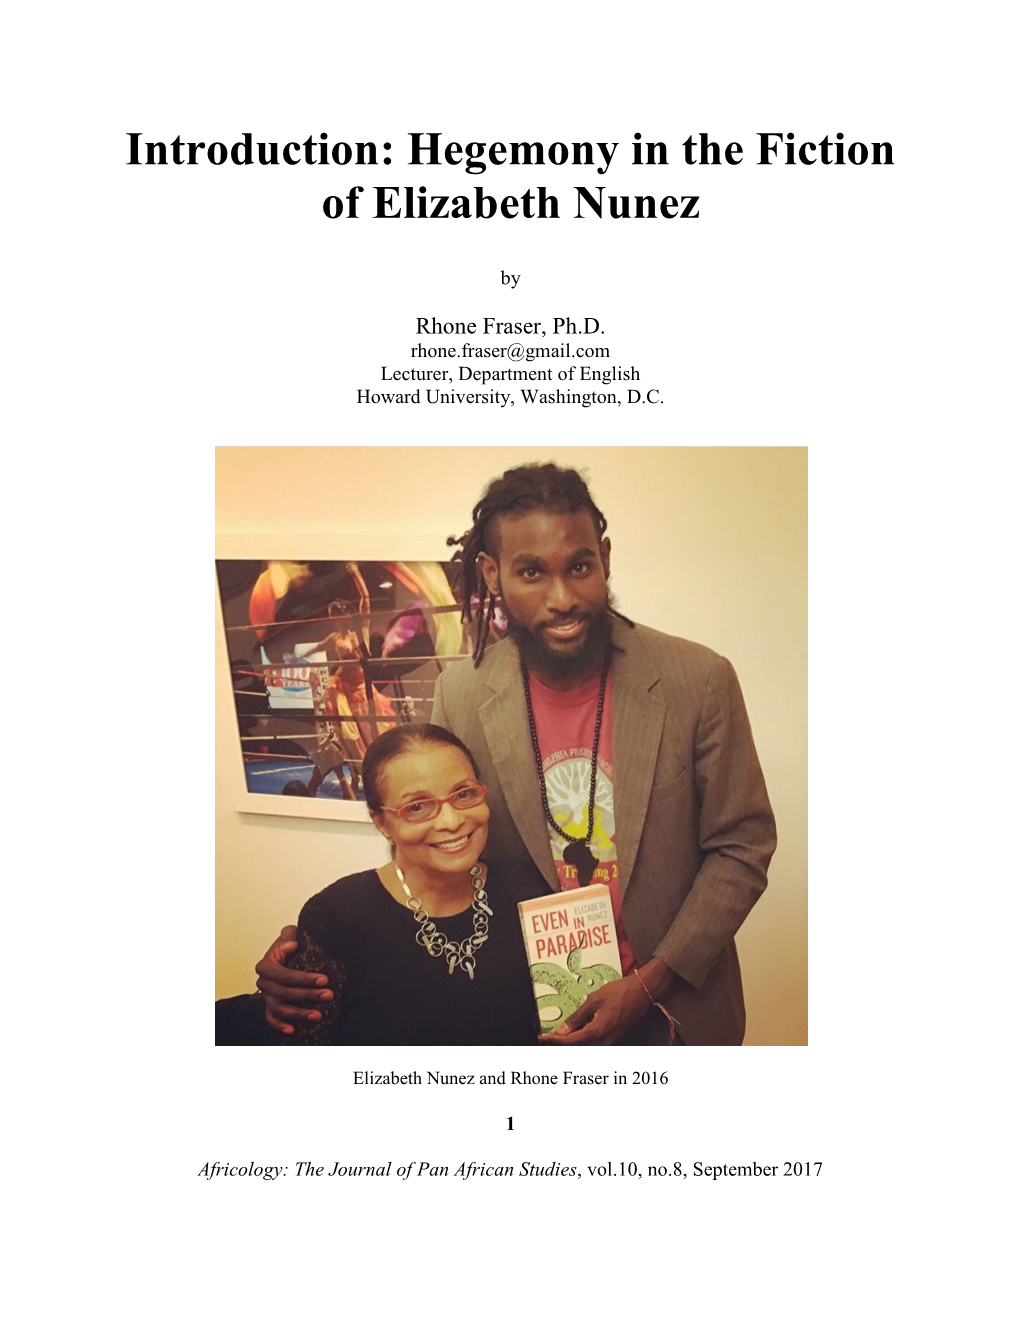 Introduction: Hegemony in the Fiction of Elizabeth Nunez